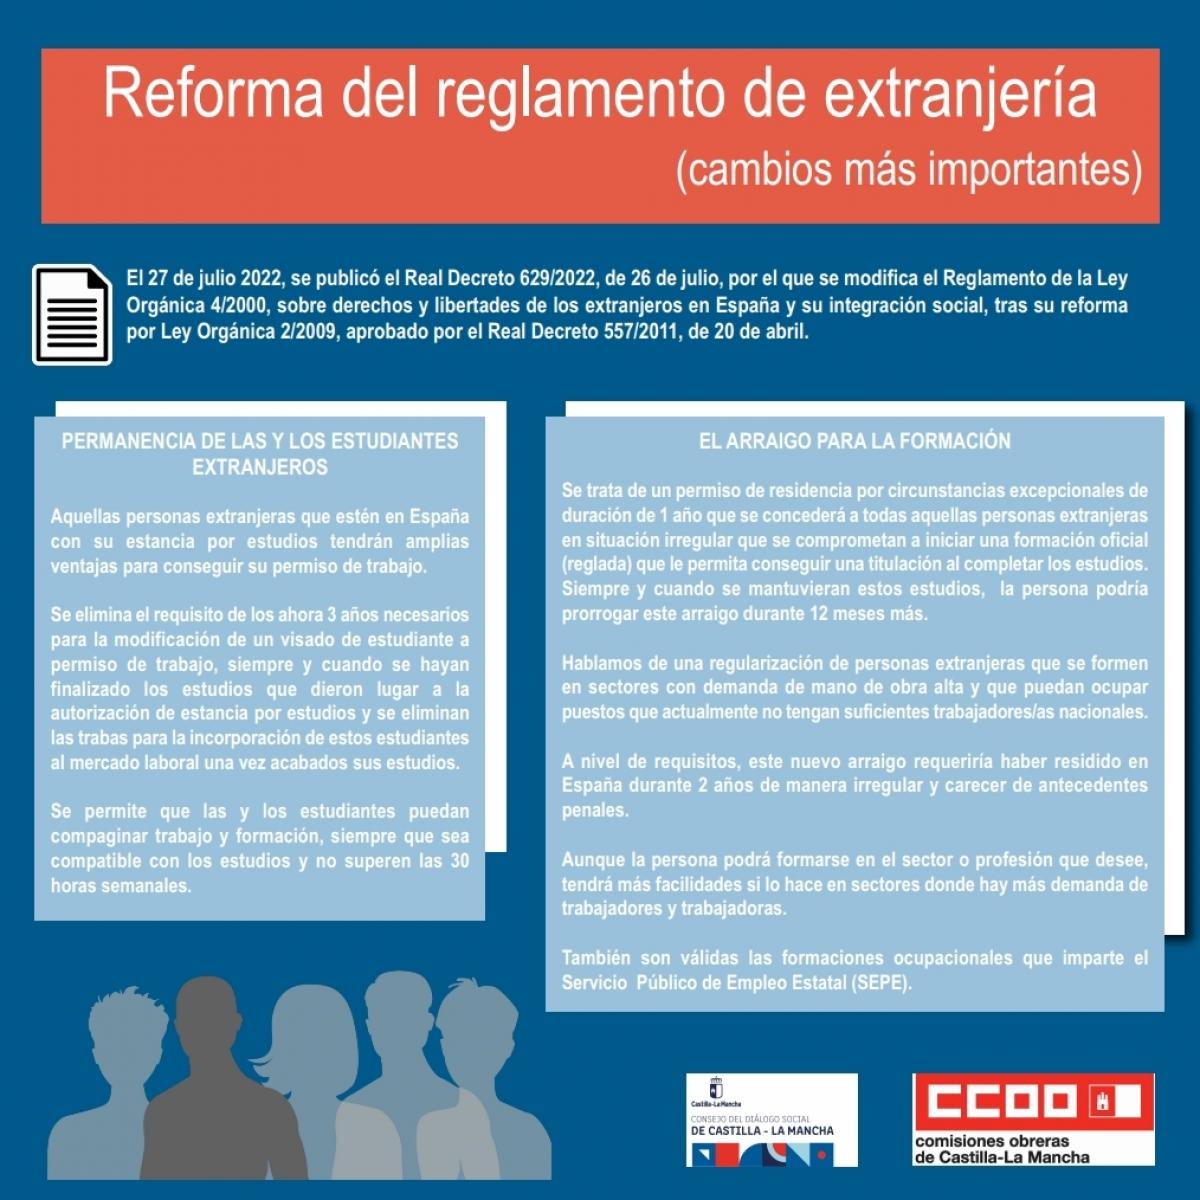 CCOO CLM informa de los cambios más importantes en el reglamento de extranjería